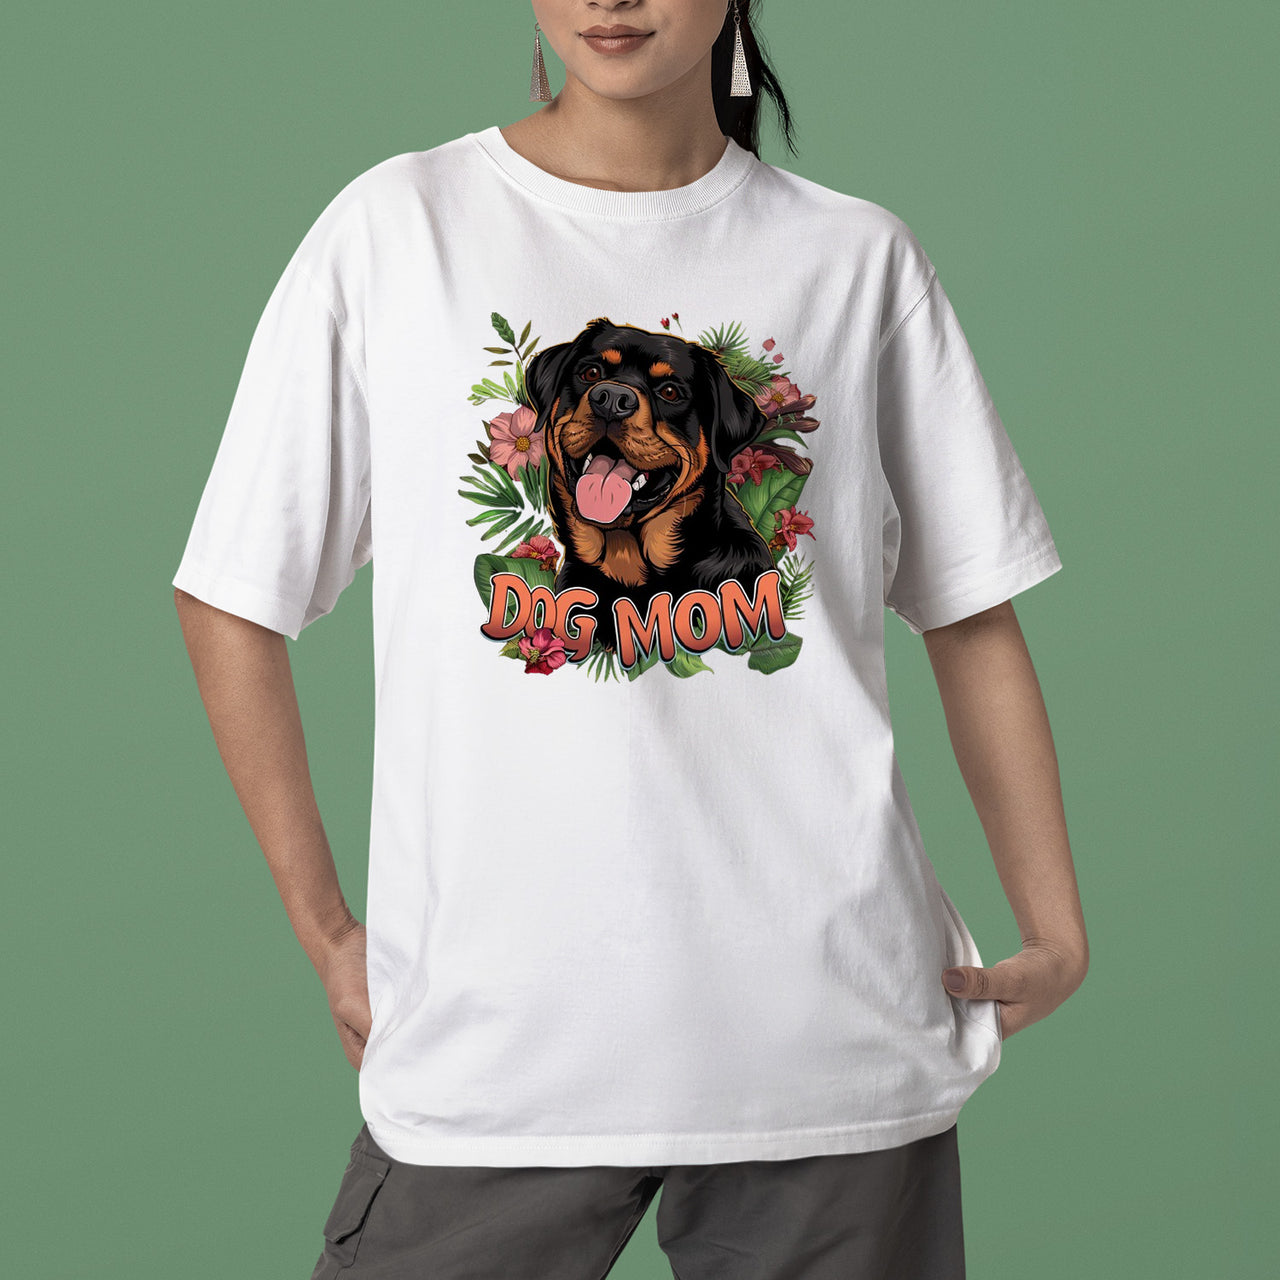 Rottweiler Dog T-shirt, Pet Lover Shirt, Dog Lover Shirt, Dog Mom T-Shirt, Dog Owner Shirt, Gift For Dog Mom, Funny Dog Shirts, Women Dog T-Shirt, Mother's Day Gift, Dog Lover Wife Gifts, Dog Shirt